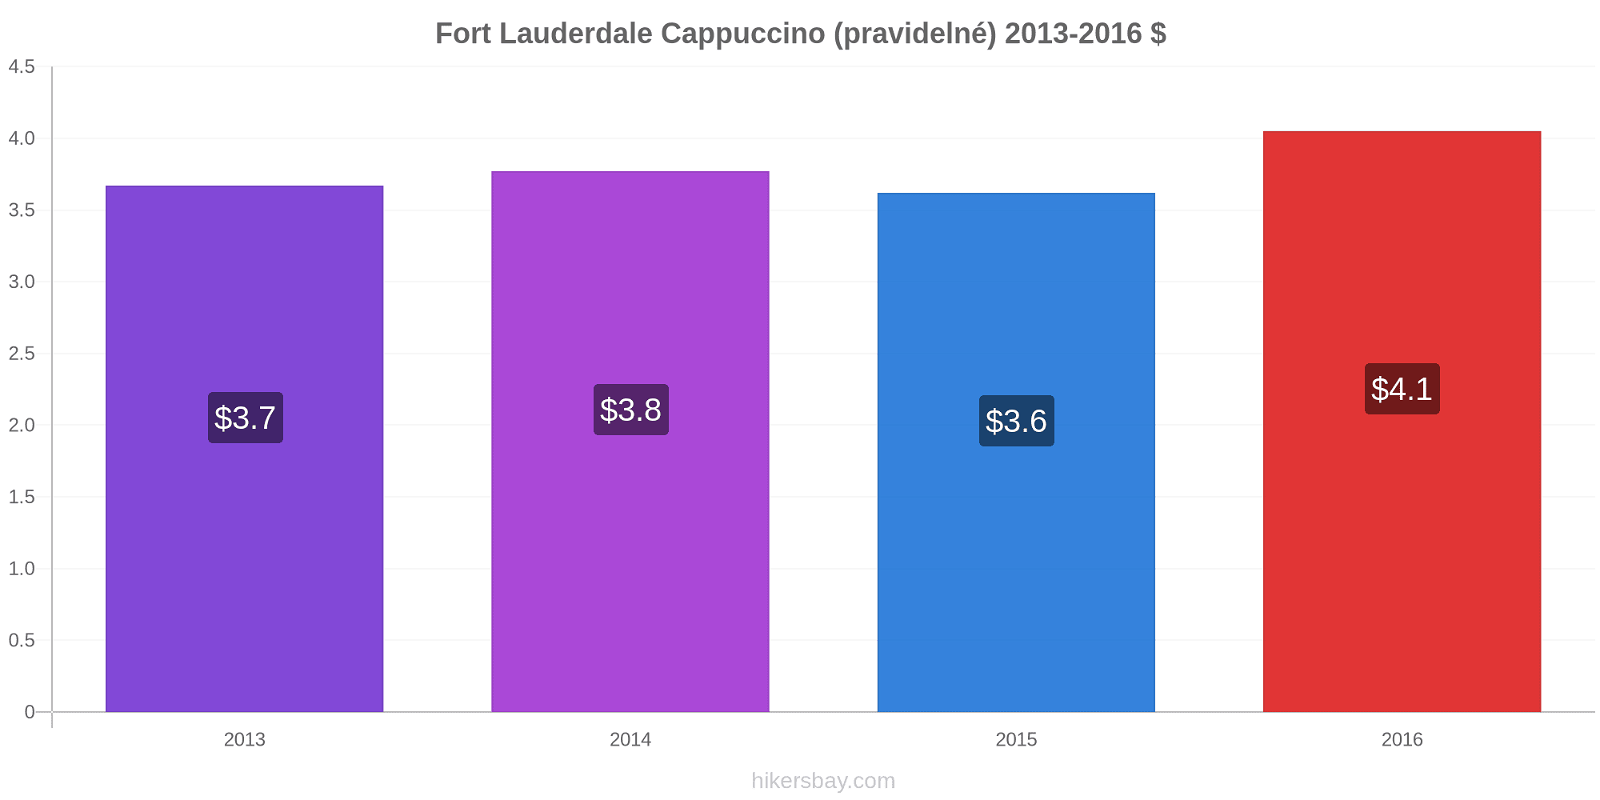 Fort Lauderdale změny cen Cappuccino (pravidelné) hikersbay.com